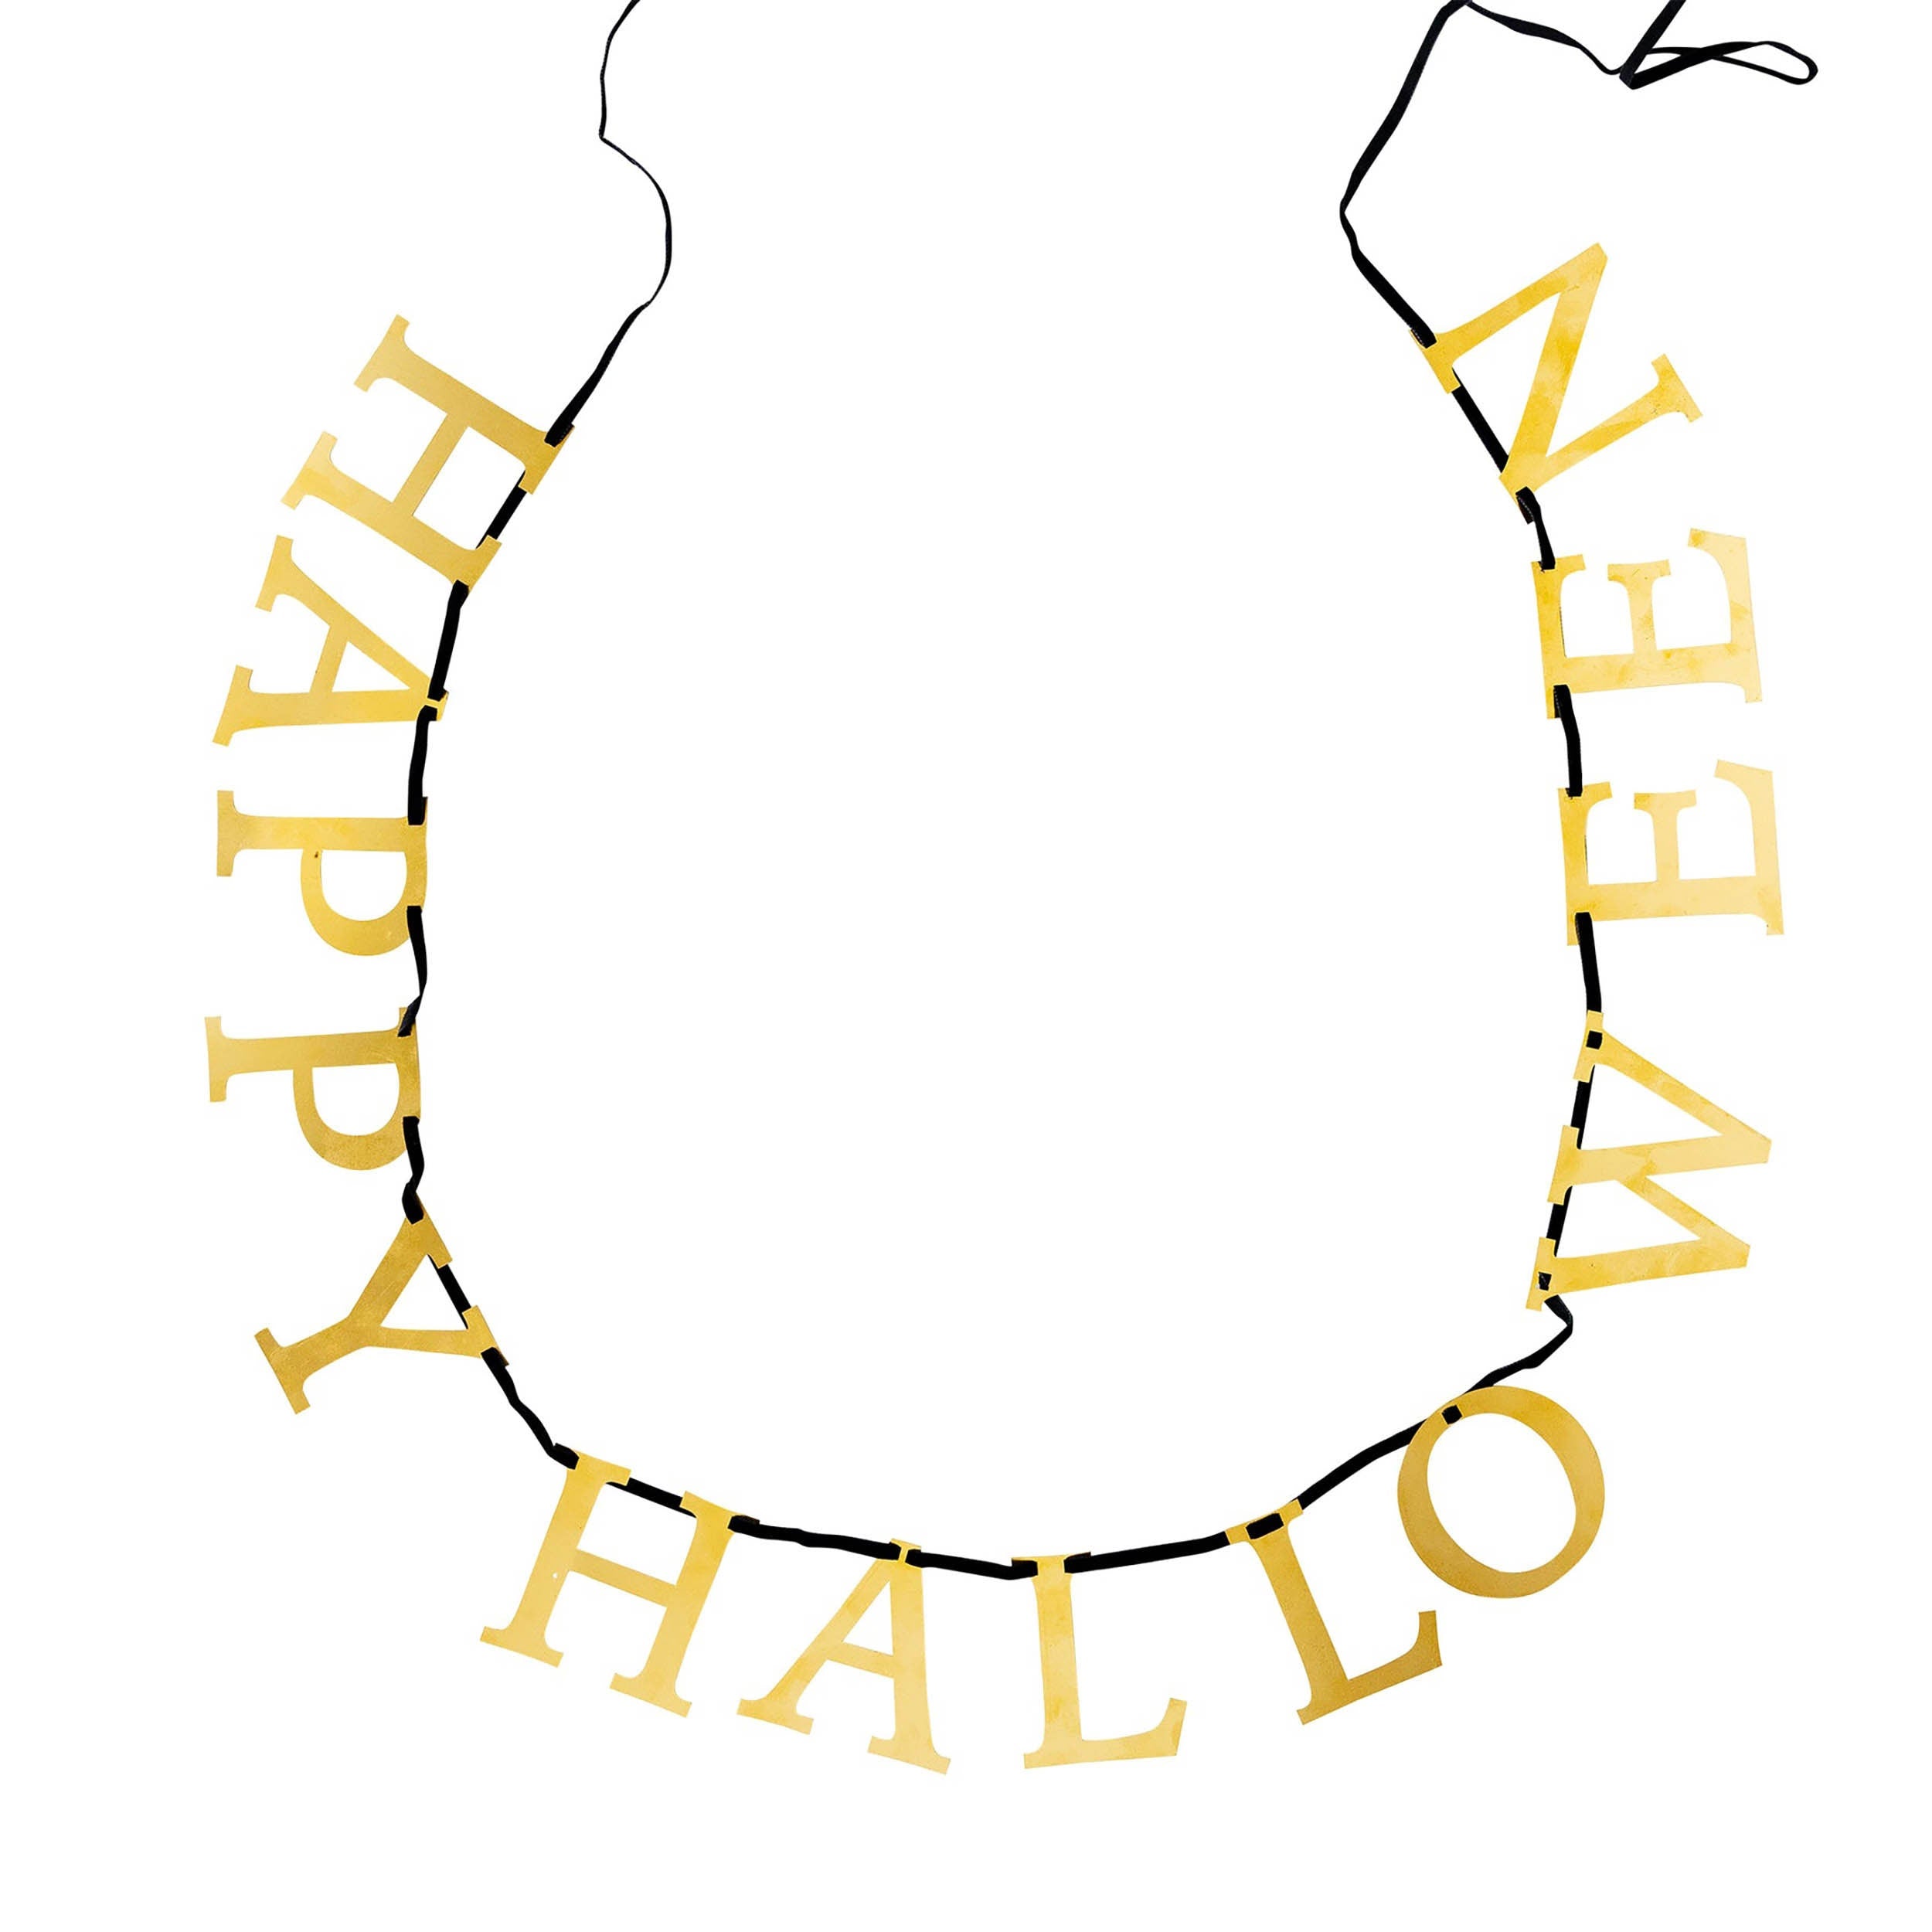 Happy Halloween Banner | Halloween Banner - Halloween Party Decor - Halloween Mantel Decor - Halloween Home Decor - Halloween Party Supplies